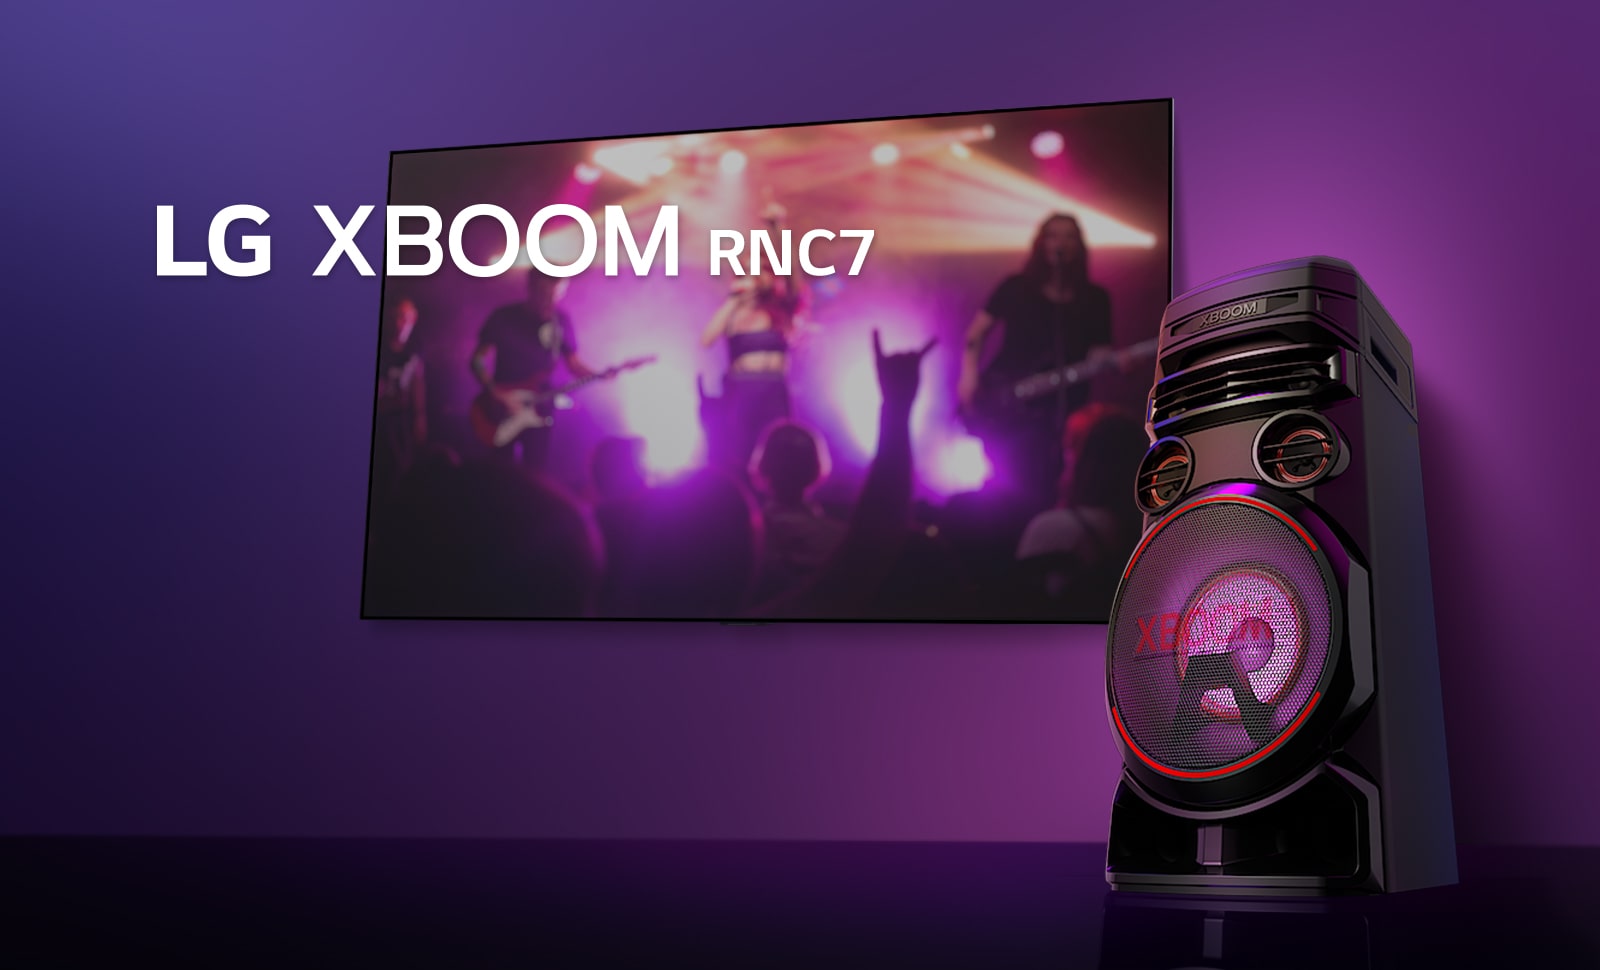 Χαμηλή γωνία θέασης δεξιάς πλευράς του LG XBOOM RNC7 υπό χαμηλή γωνία, σε μωβ φόντο. Το φως XBOOM είναι επίσης μωβ. Σε μια οθόνη τηλεόρασης βλέπουμε πλάνο από μια συναυλία.